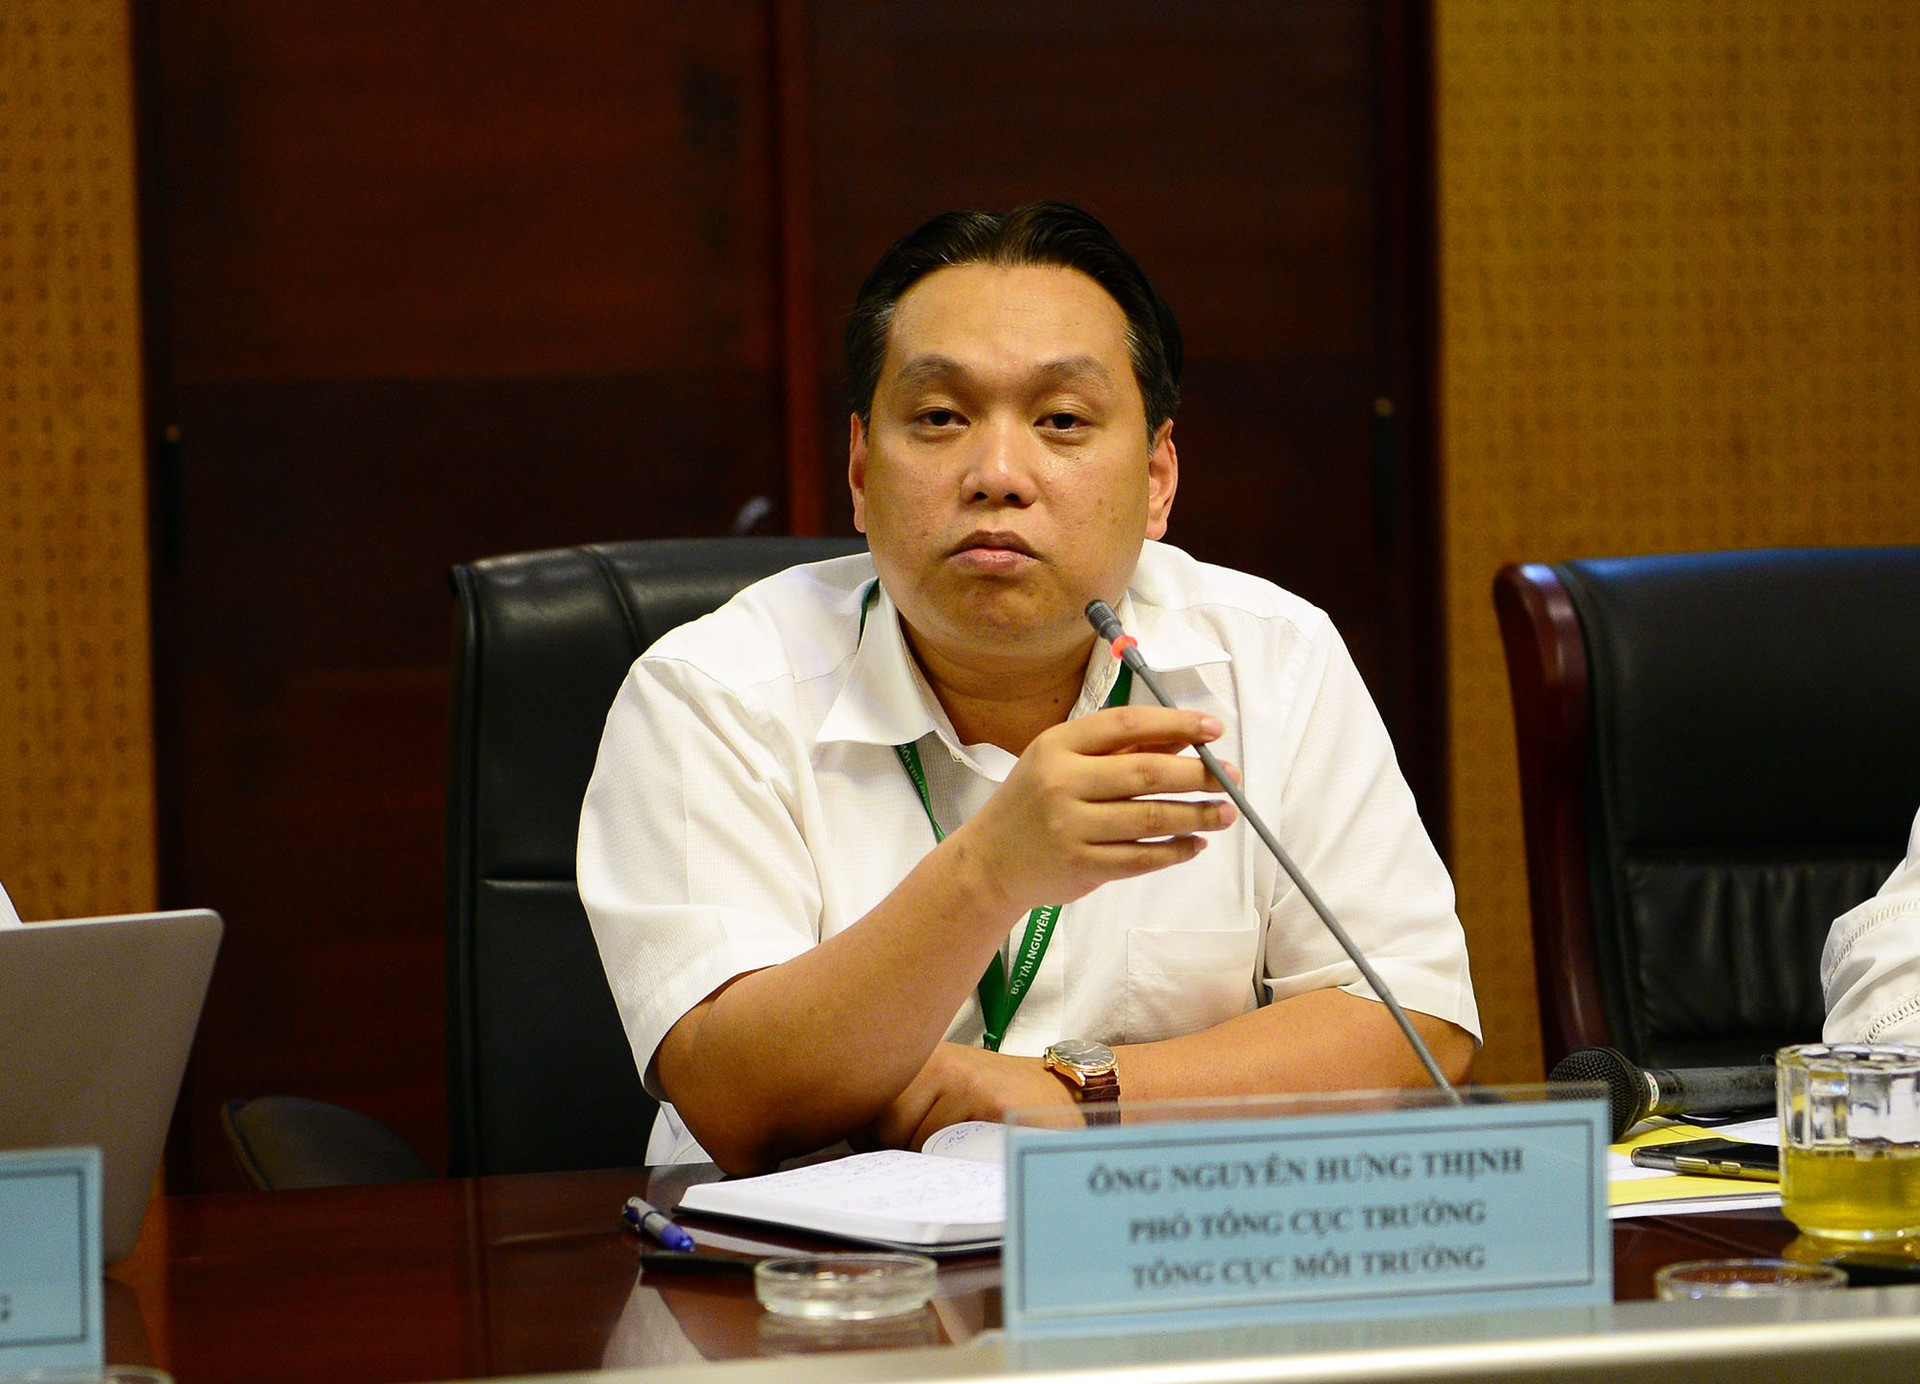 Ông Nguyễn Hưng Thịnh - Phó Tổng Cục trưởng Tổng cục Môi trường (Bộ TN&MT).